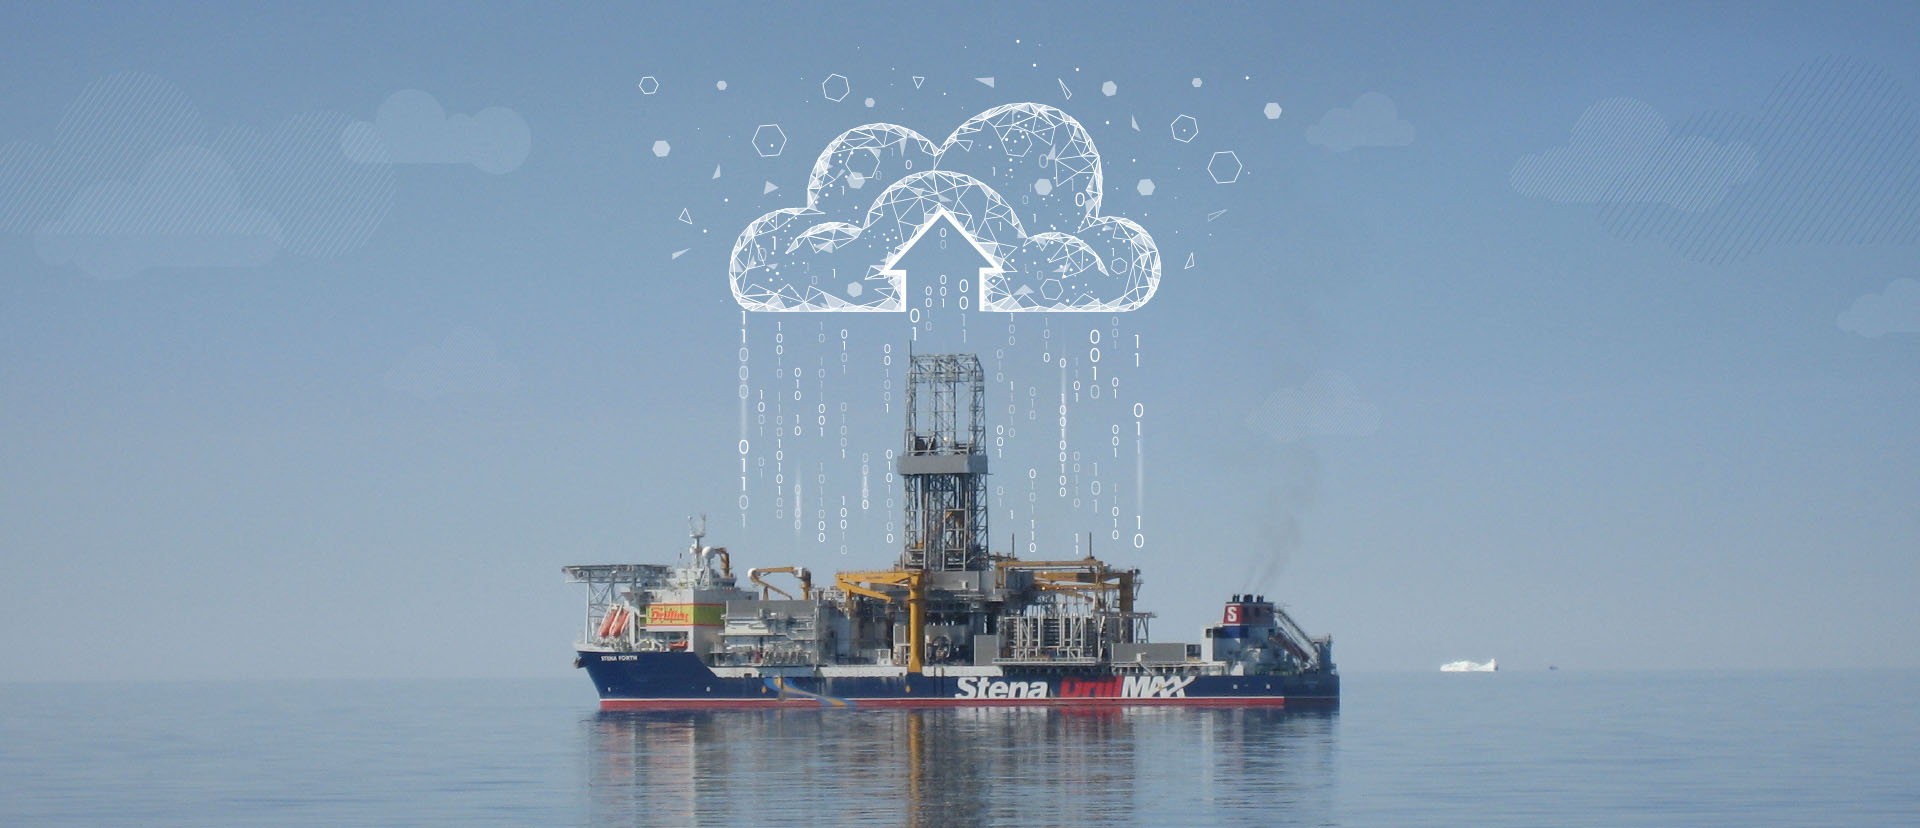 Stena drillships performing a digital cloud transfer illustration